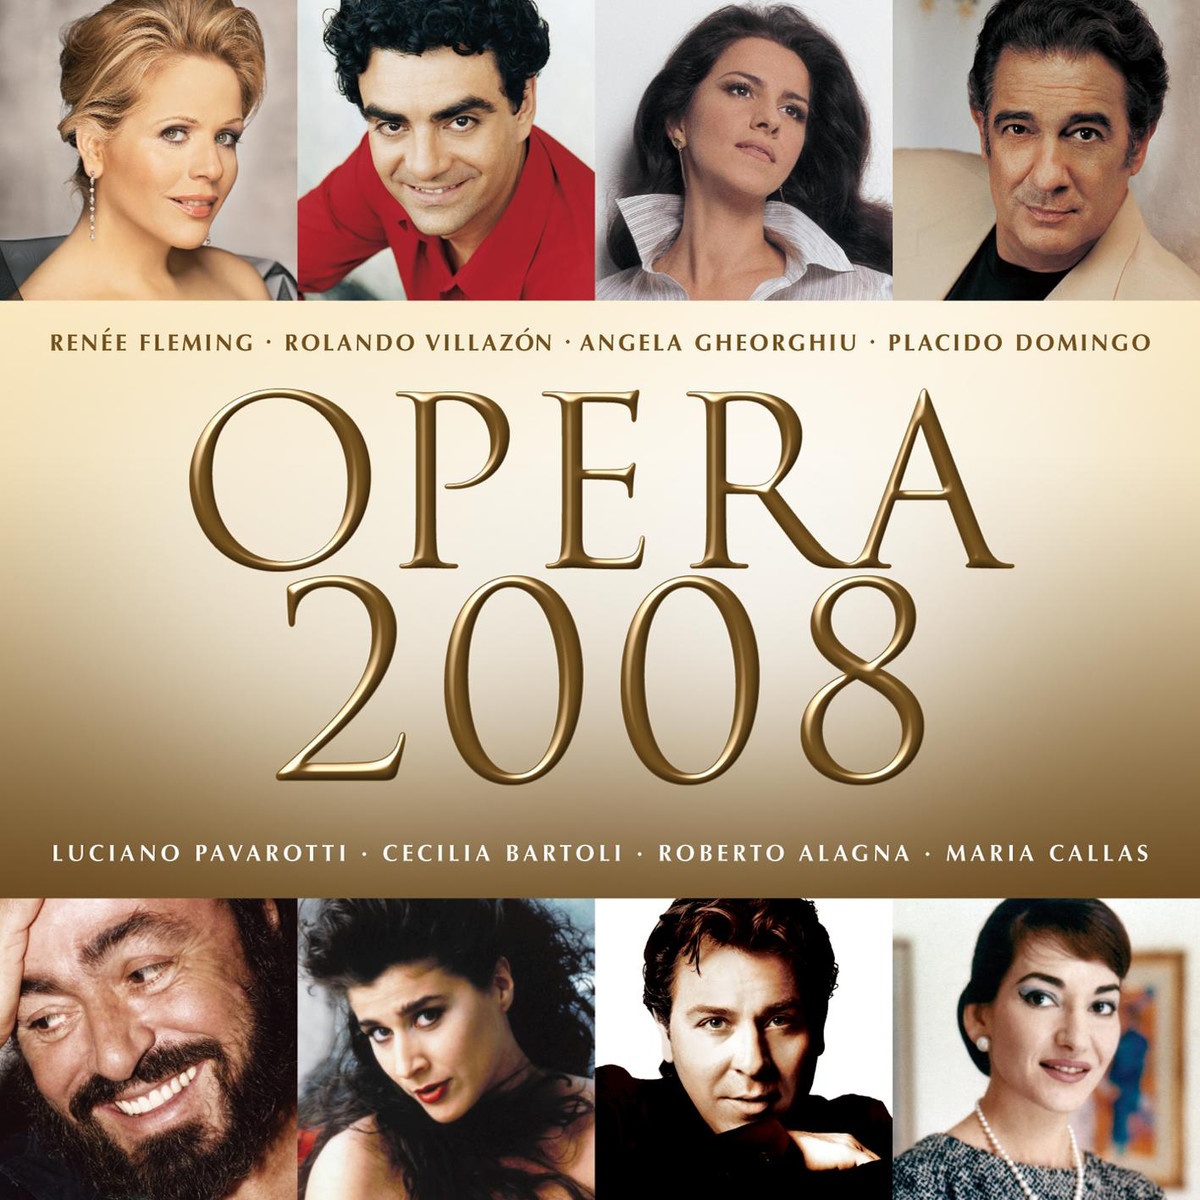 Opera 2008